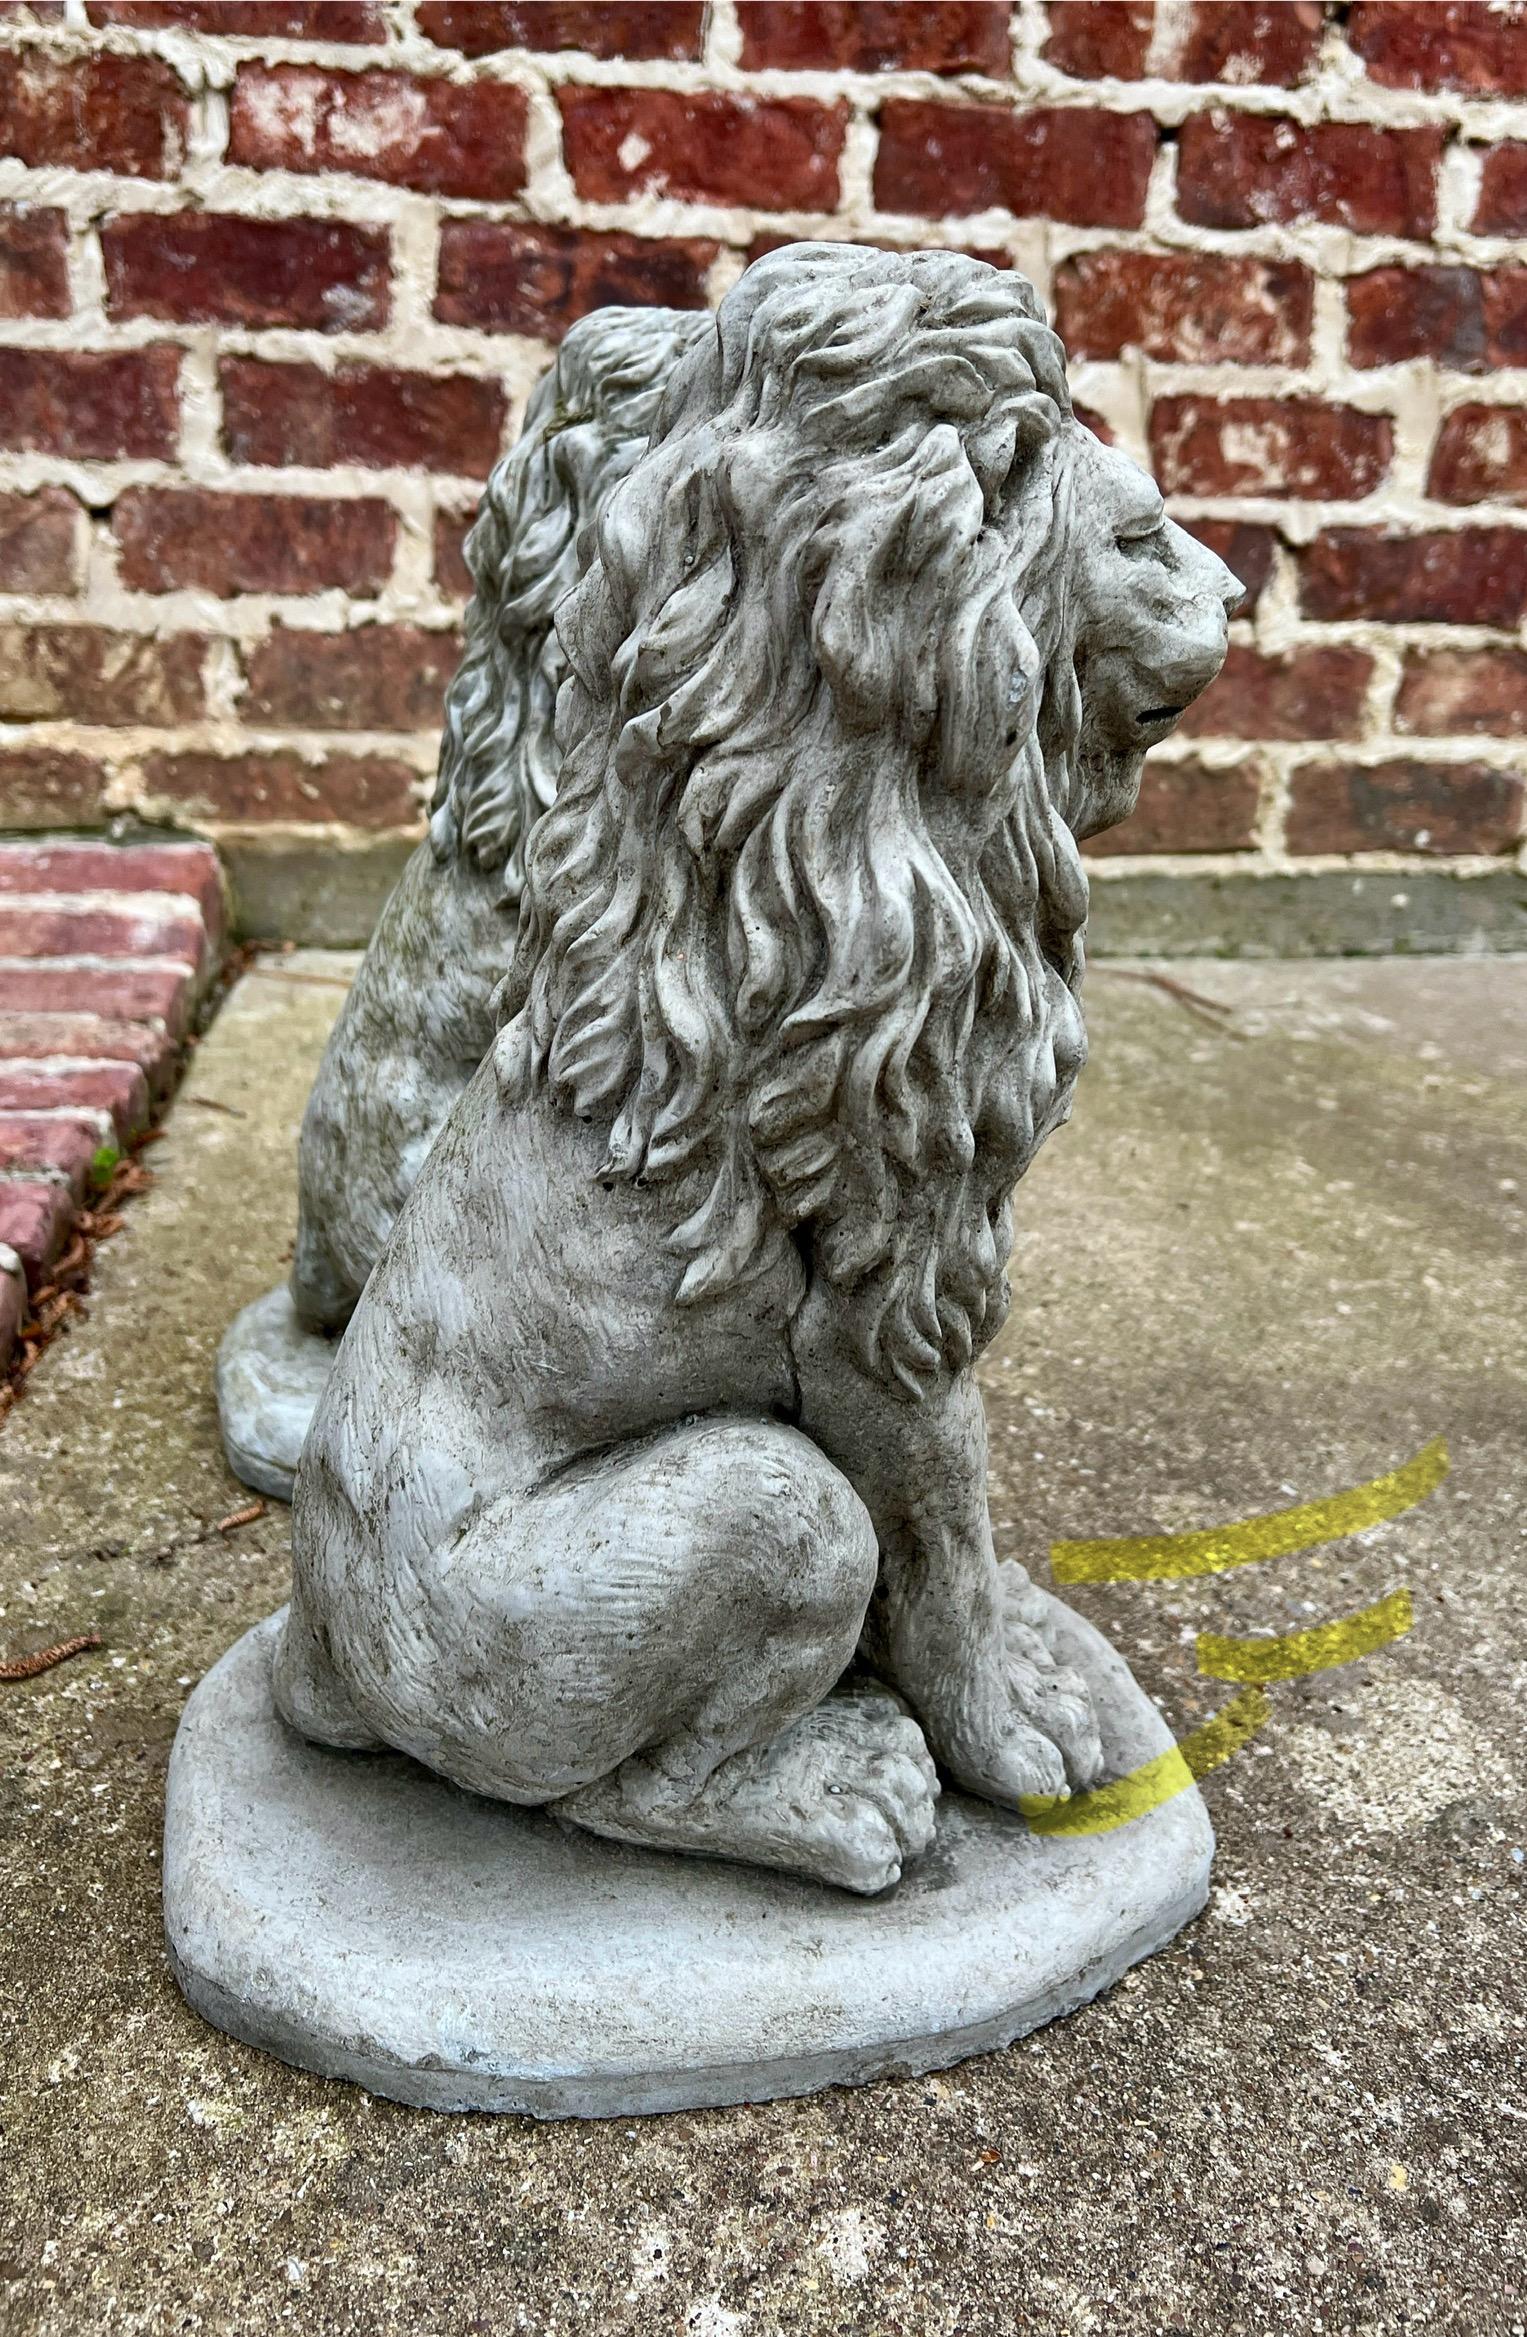 Vintage English Statues LIONS PAIR Garden Figures Cast Stone Yard Decor 16